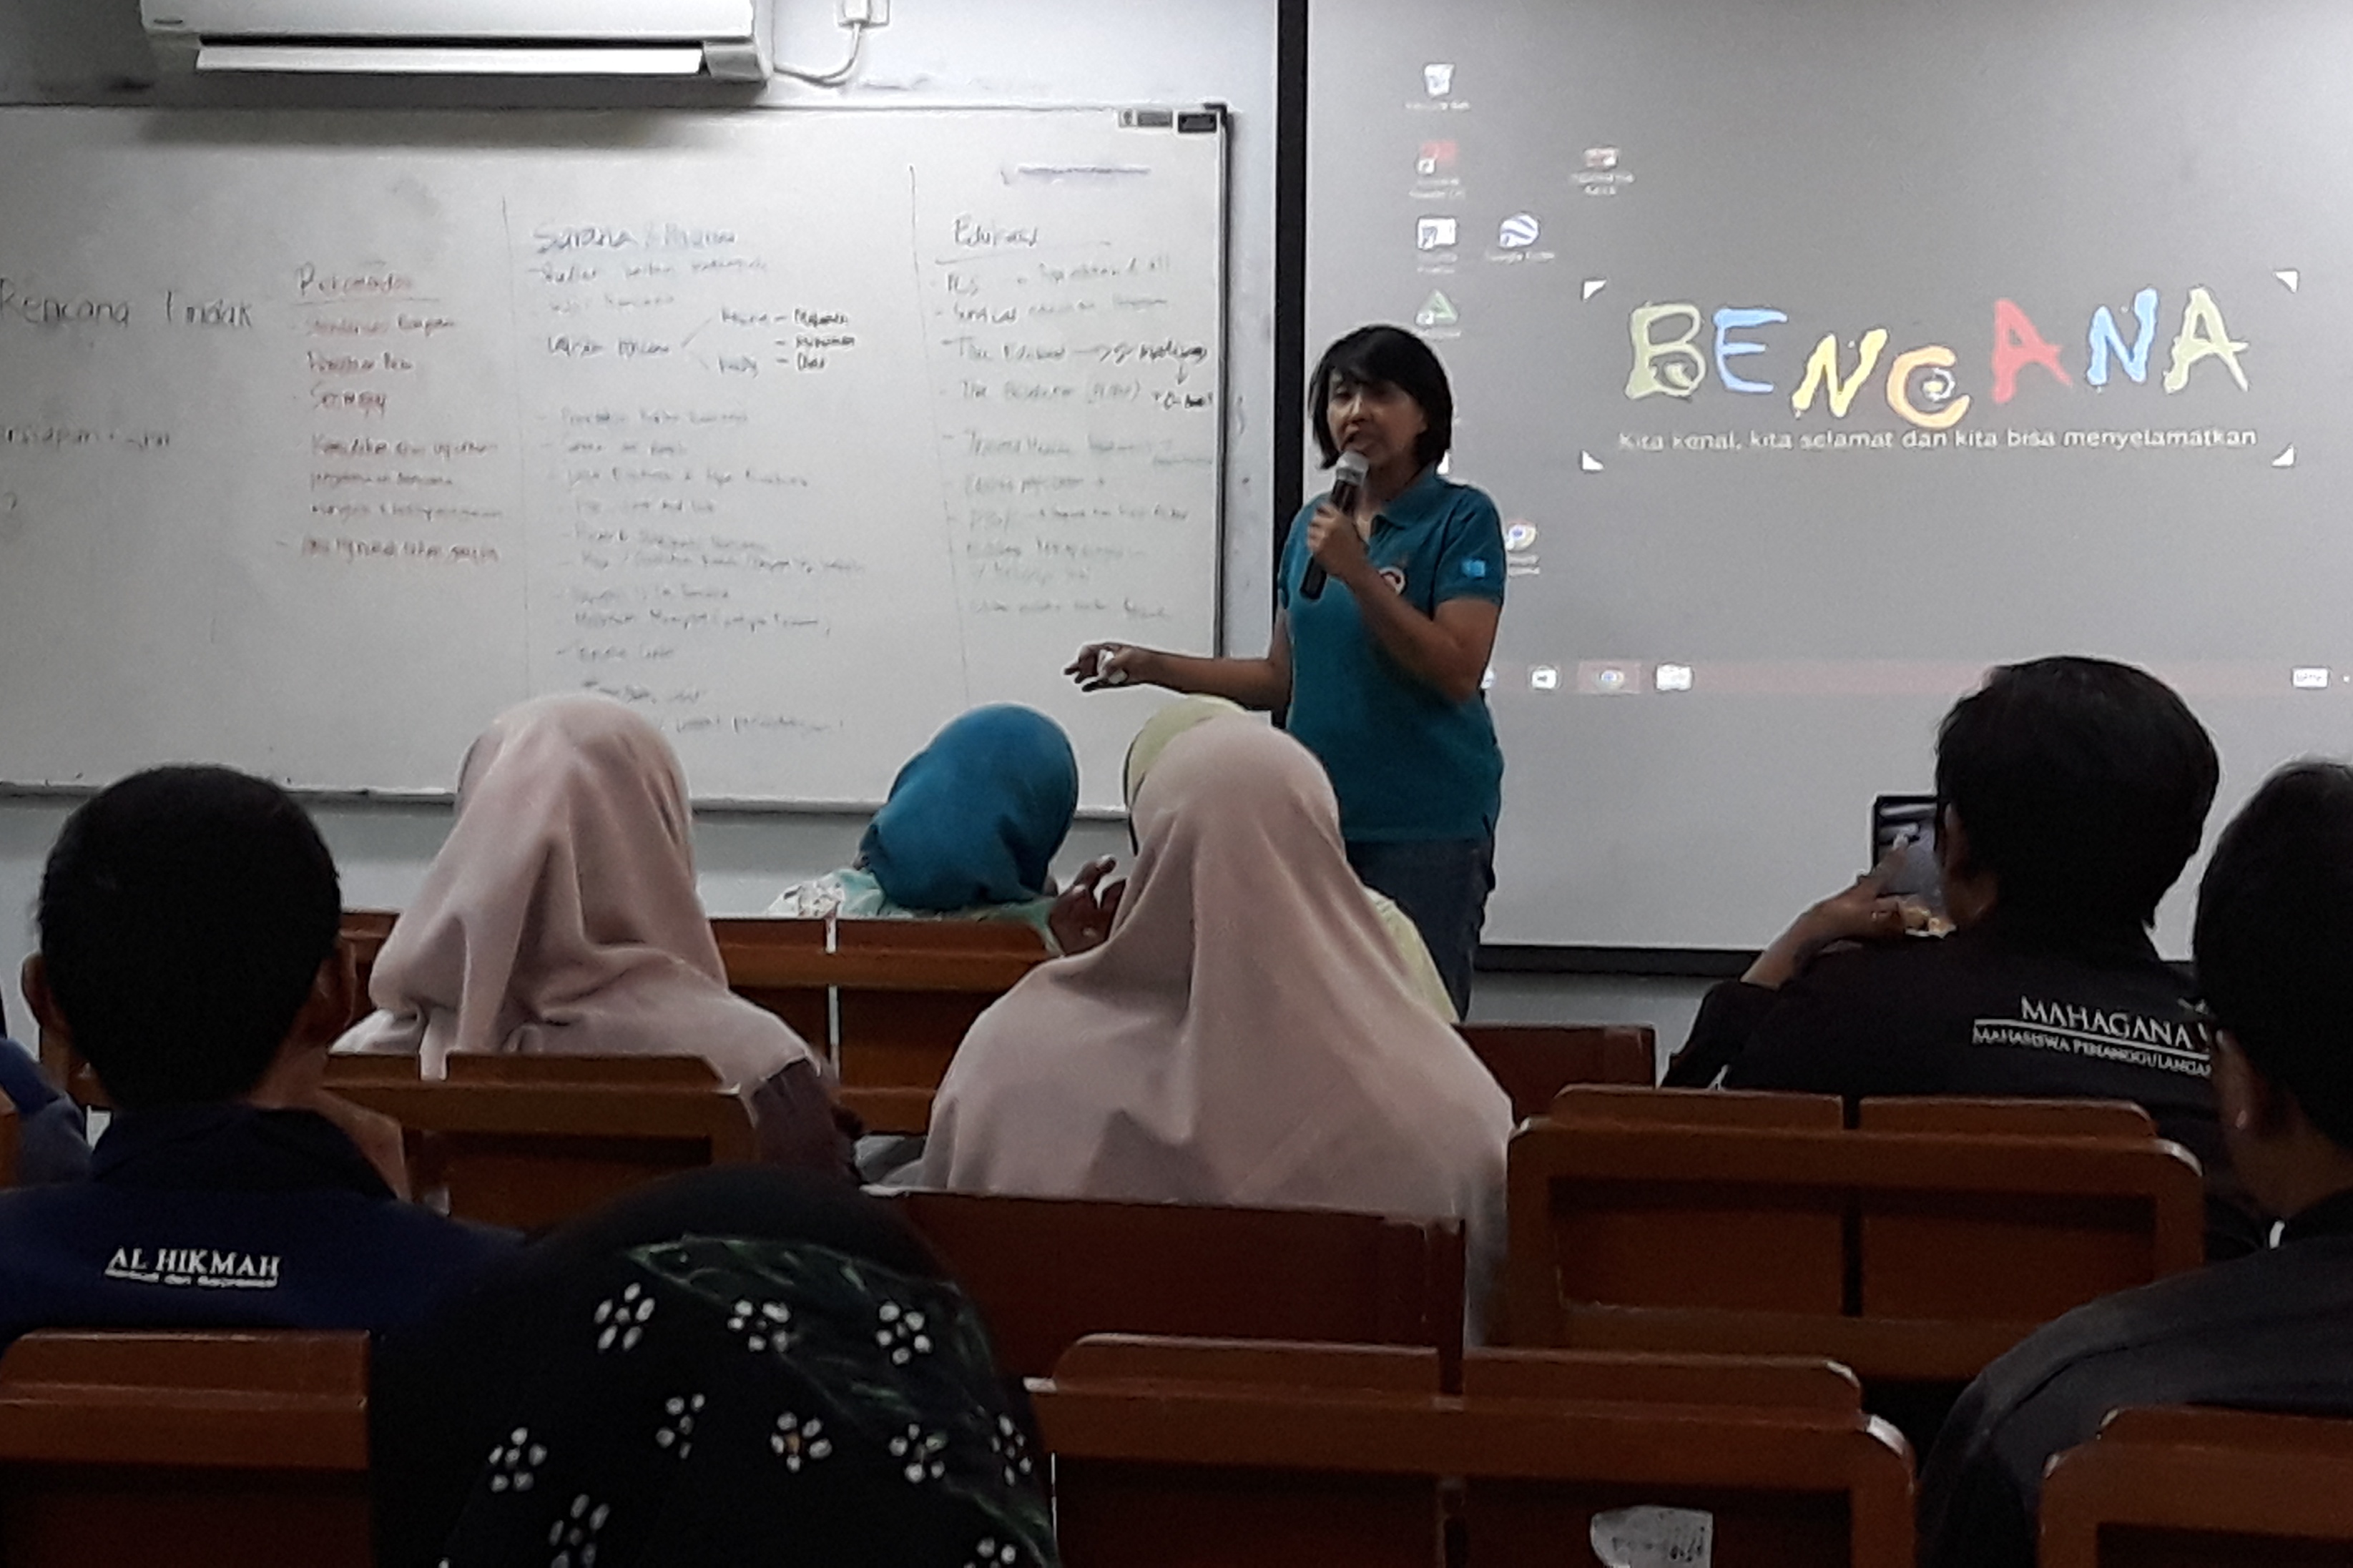 Retno Indro Putri mengarahkan pembagian saran-saran dari peserta ke kelas edukasi, sarana pra sarana, dan rekomendasi. Serta meyampaikan prosedur pembentukan kelompok edukator.